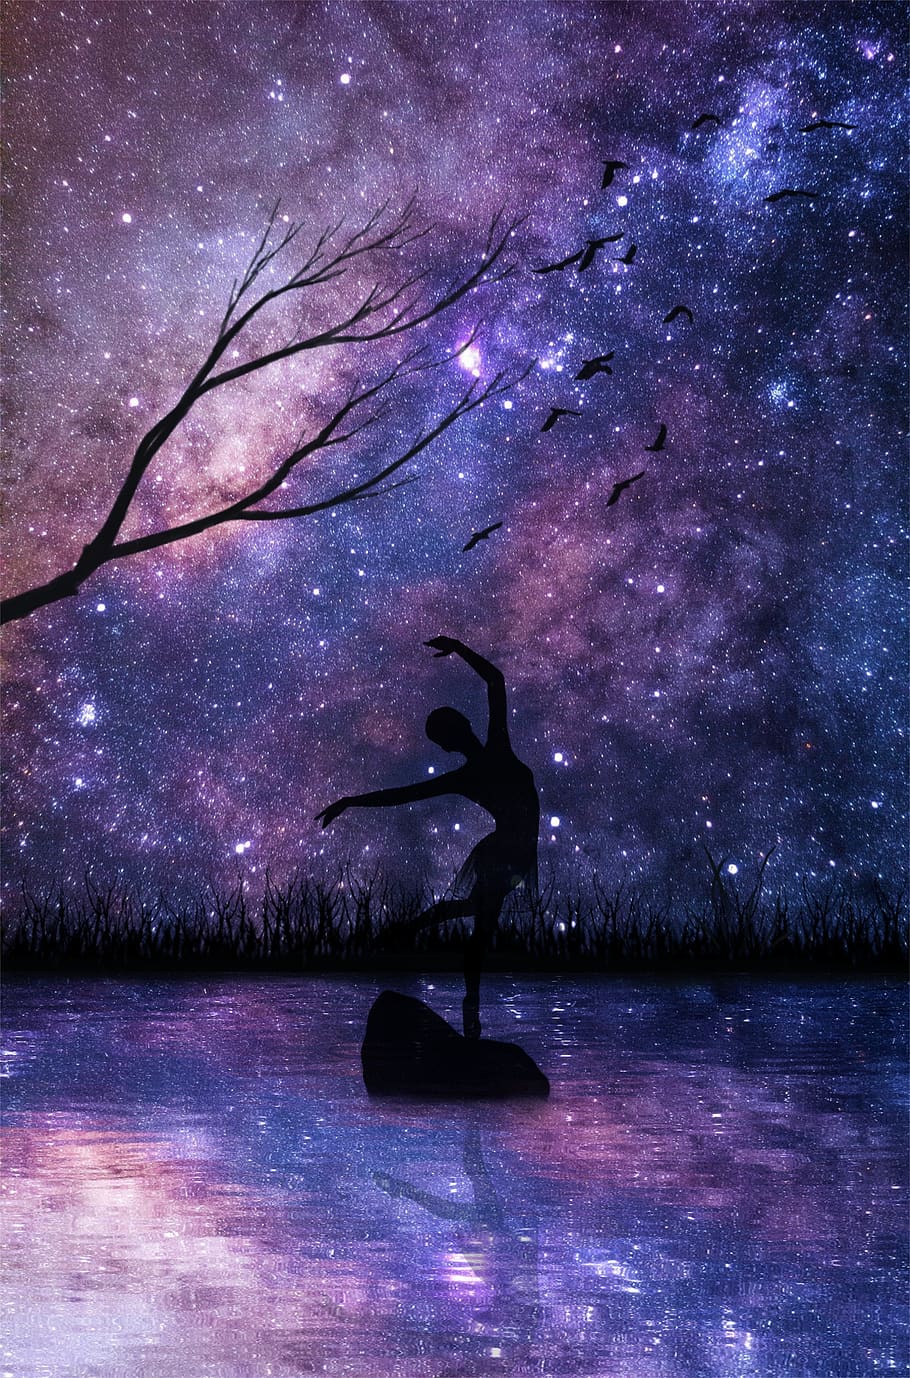 bailarina, reflejo, agua, mujeres, niña, árbol, pájaros, nebulosa, noche, piedra